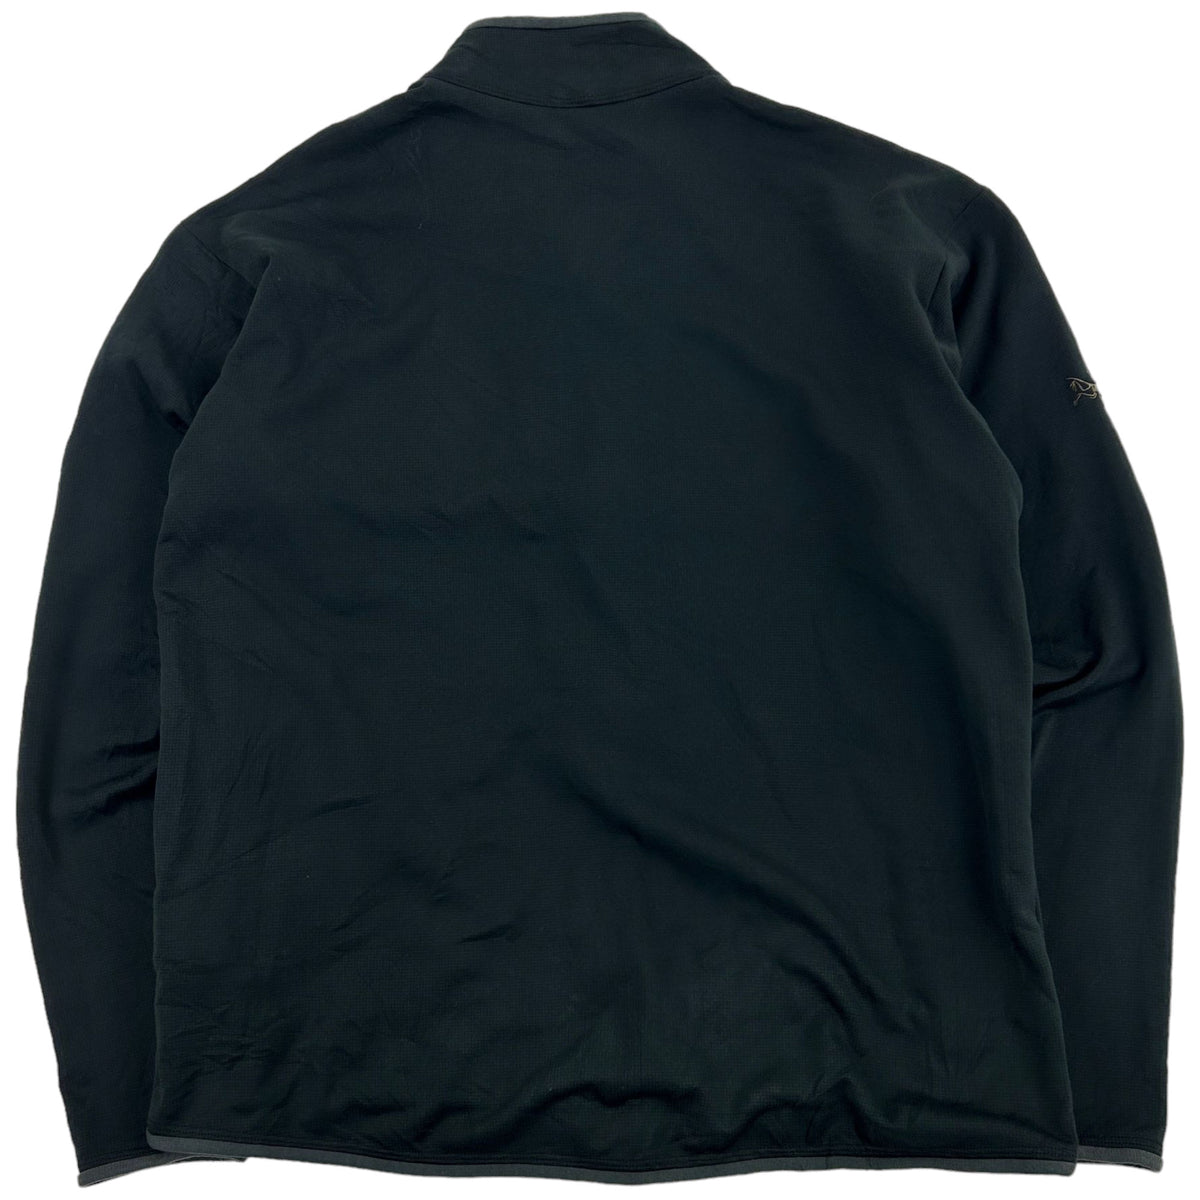 Vintage Arcteryx  Fleece Jacket Size M